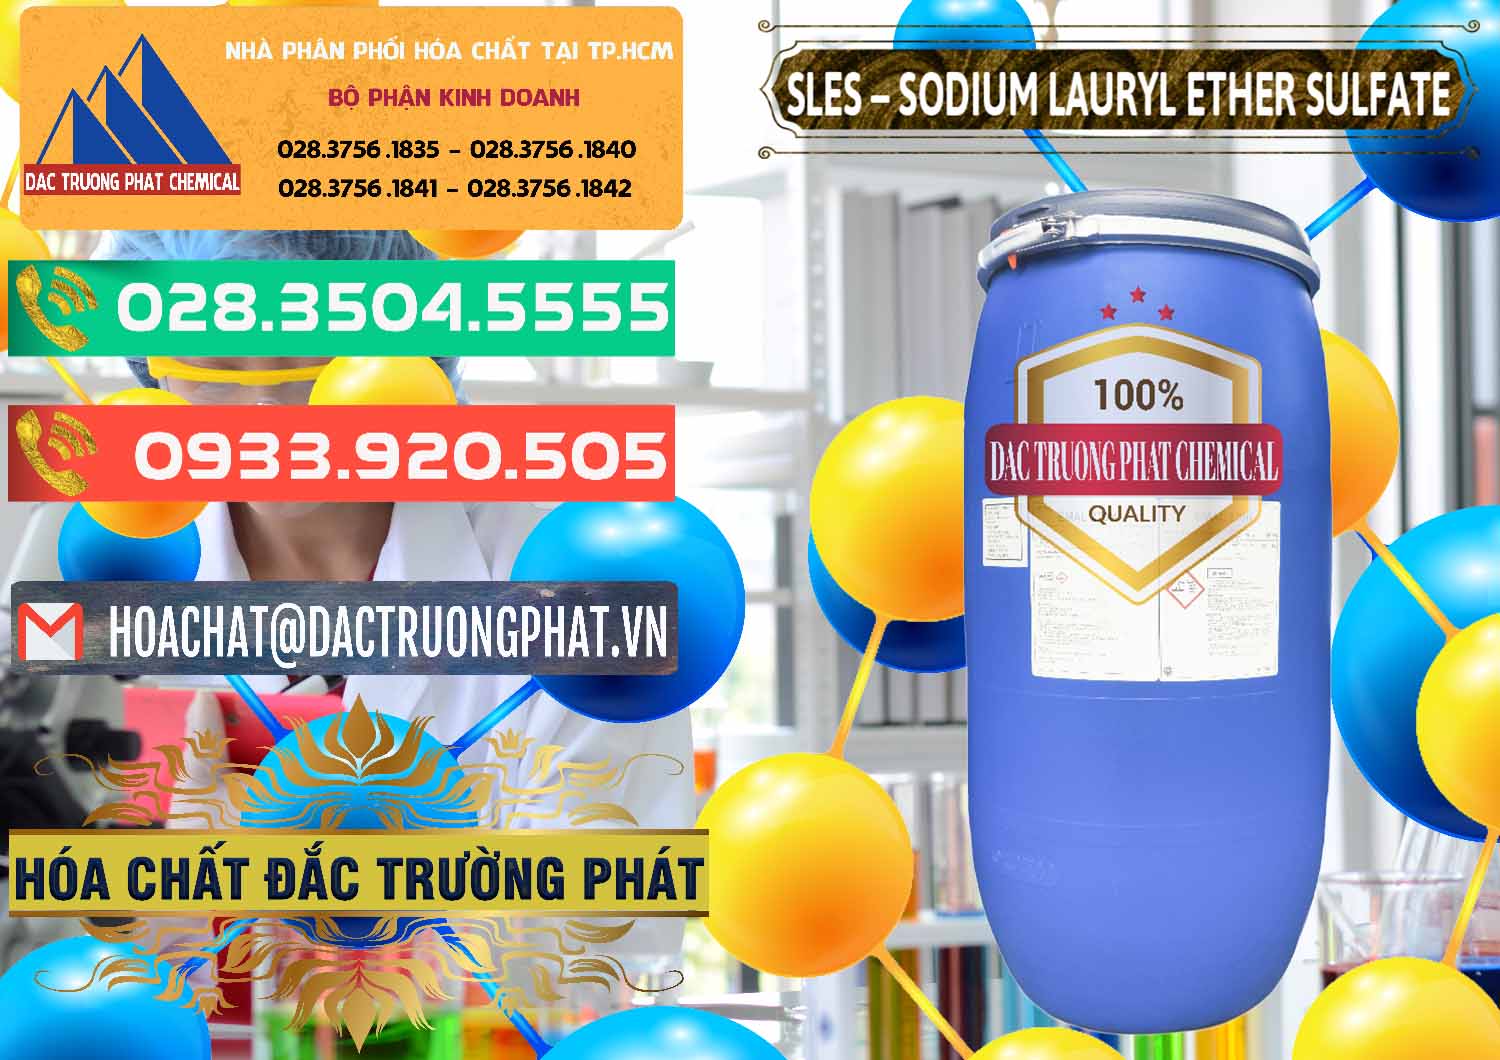 Cty cung cấp và bán Chất Tạo Bọt Sles - Sodium Lauryl Ether Sulphate Kao Indonesia - 0046 - Đơn vị chuyên nhập khẩu _ phân phối hóa chất tại TP.HCM - congtyhoachat.com.vn